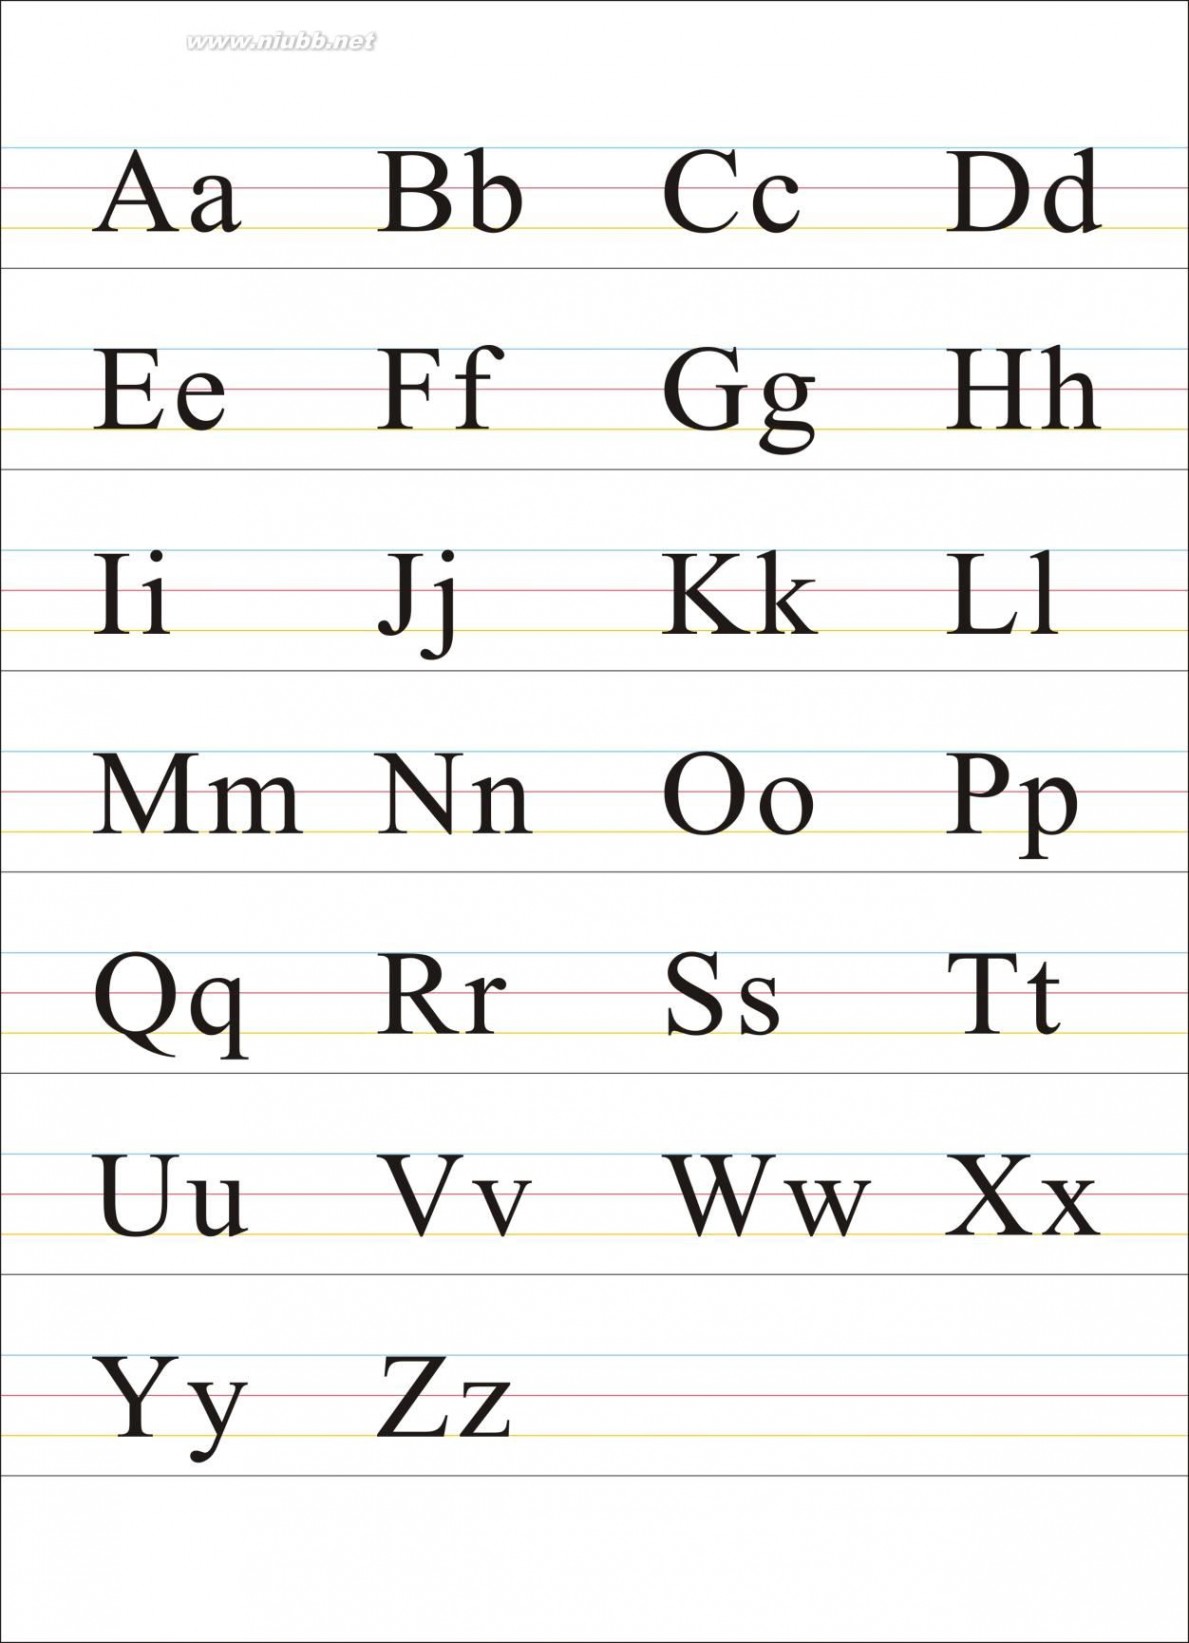 英语字母发音表 26个英文字母表及字母发音